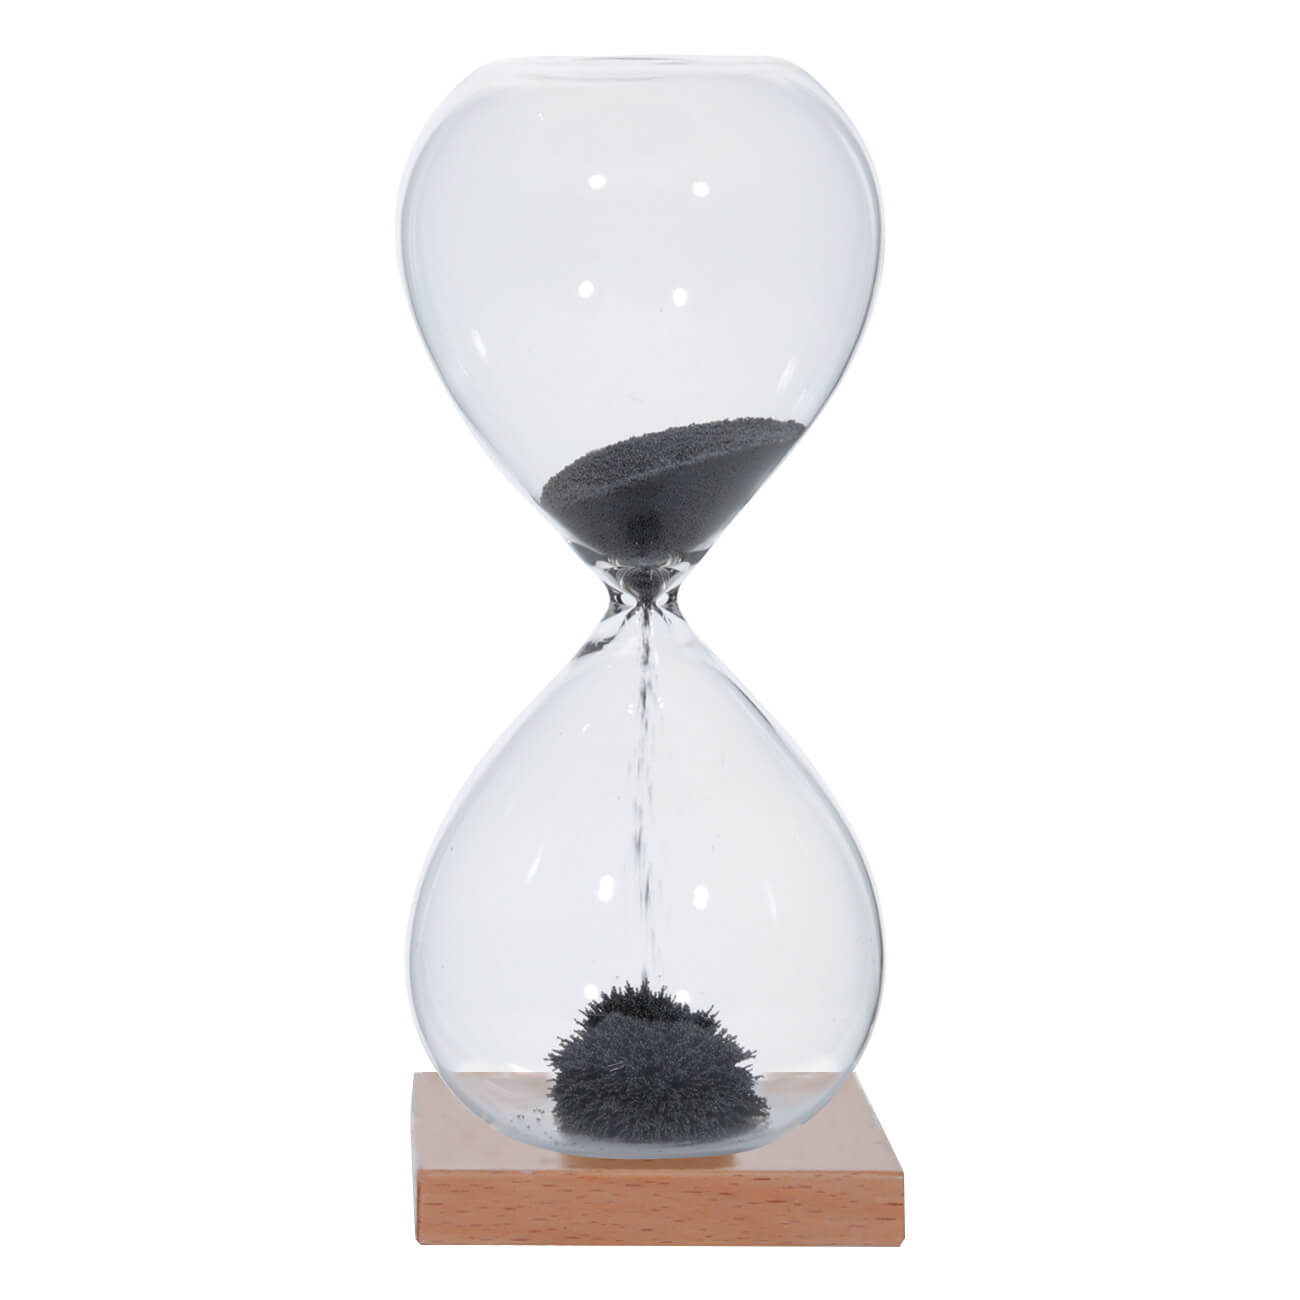 Часы песочные, 16 см, 1 минута, магнитные, на подставке, стекло/дерево, серые, Sand time